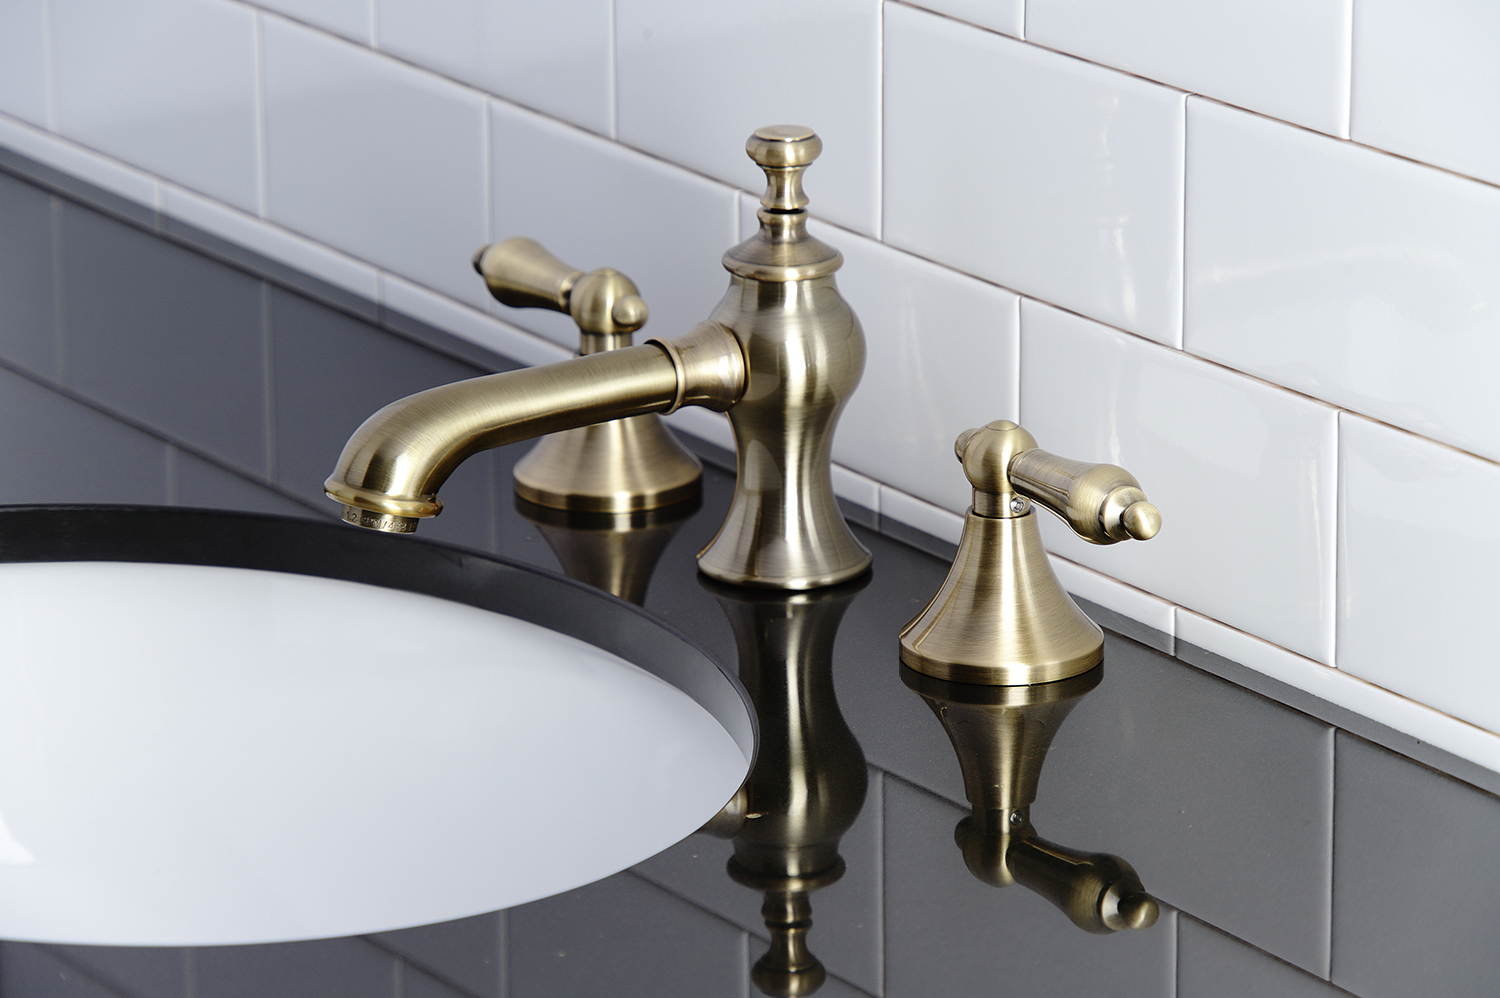 Home Improvement;Bathroom;Bathroom Faucets;Widespread Bathroom Faucet